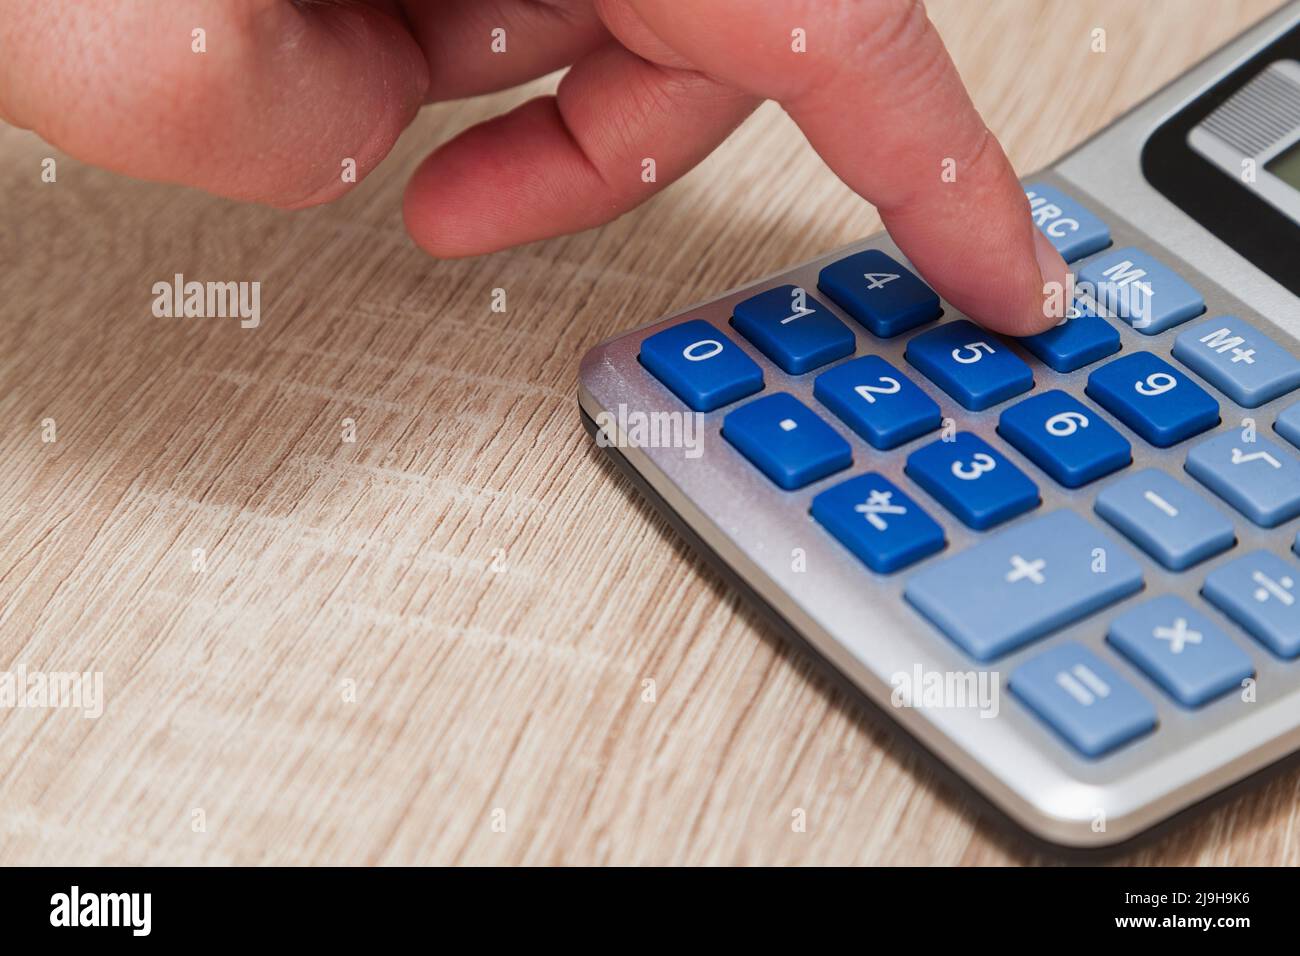 Primo piano della mano di una persona premendo il tasto numero otto sulla tastiera di una calcolatrice grigia con pulsanti blu su un tavolo di legno. Foto Stock